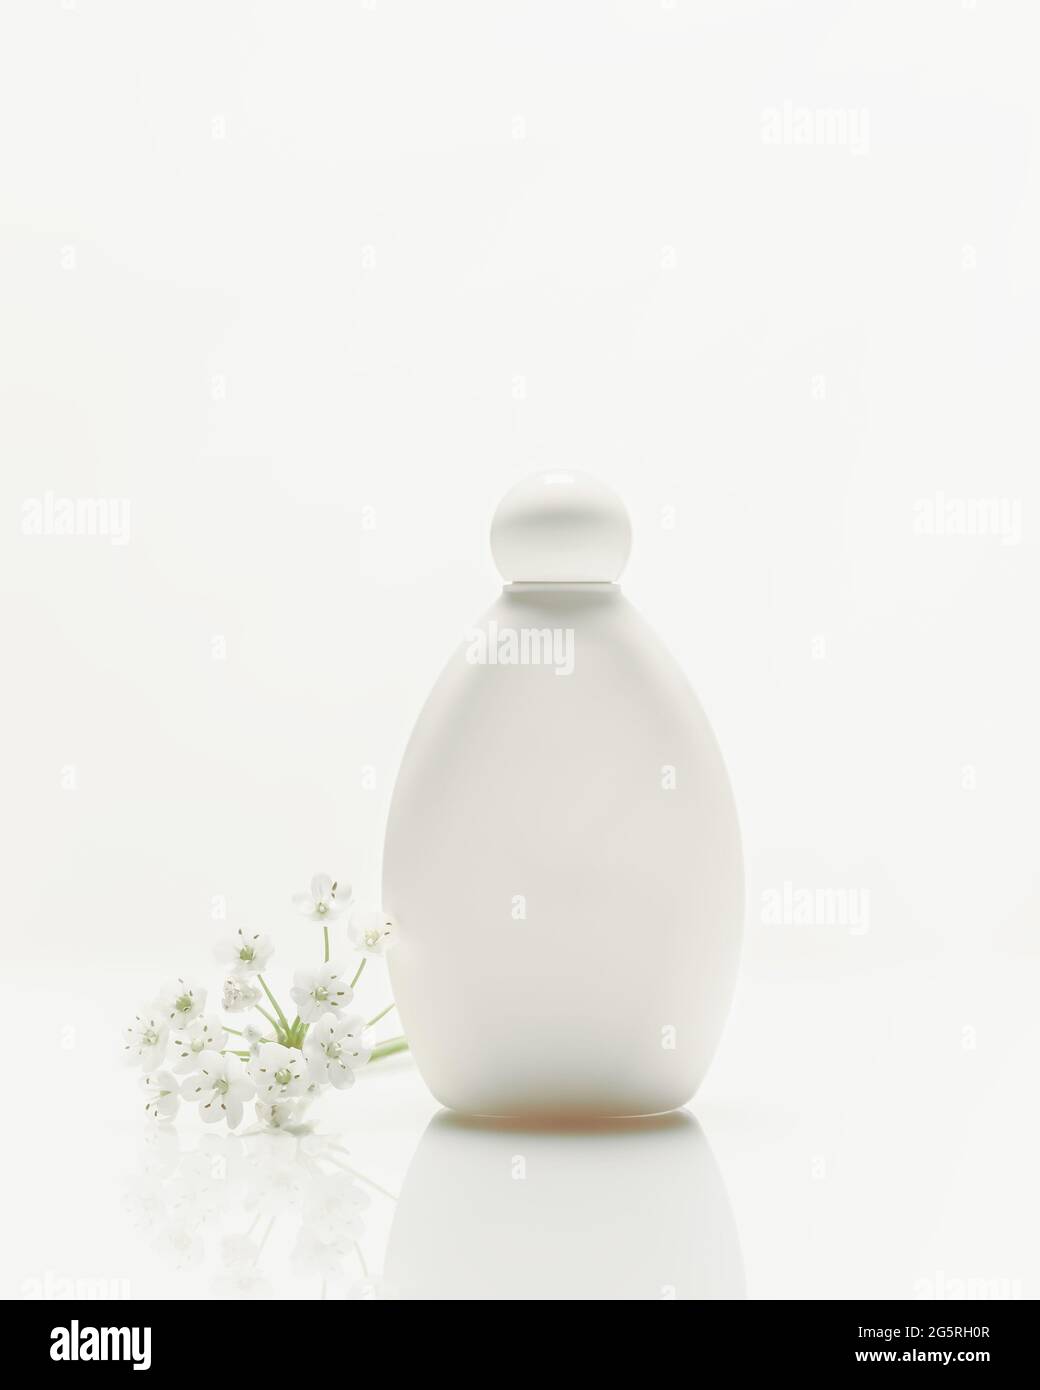 Composición cosmética vertical blanca con botella plástica con reflexión y flores sobre fondo blanco con espacio de copia. Producto de belleza Foto de stock